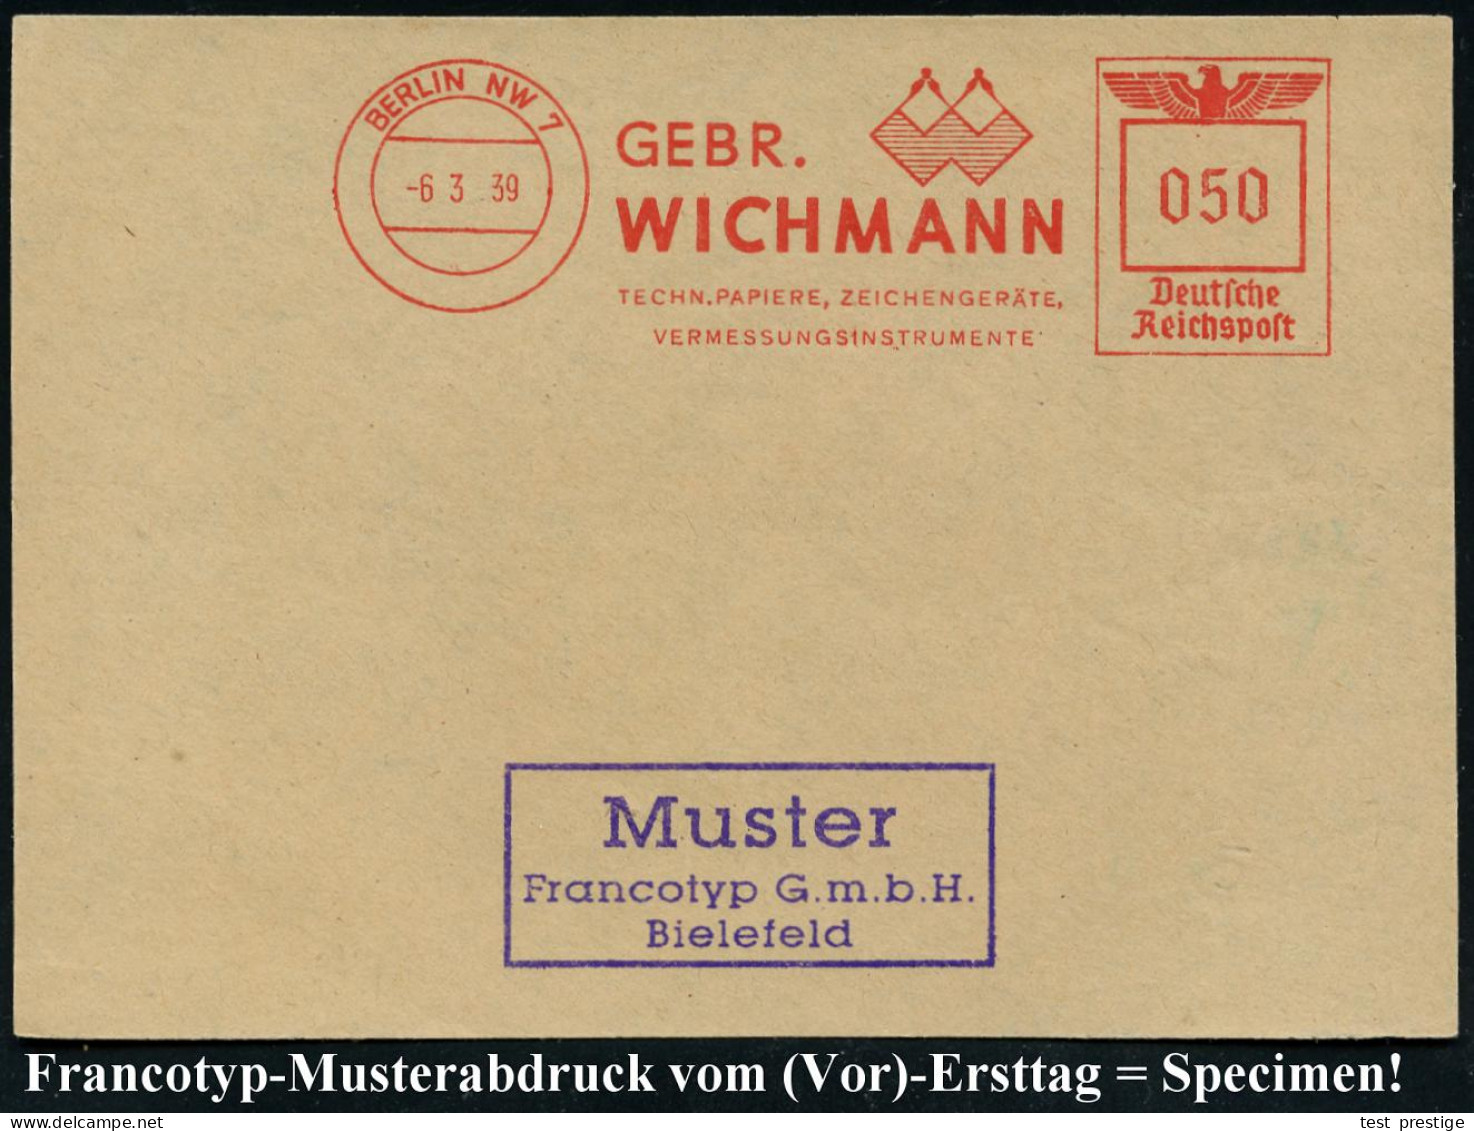 BERLIN NW7/ GEBR./ WICHMANN/ TECHN.PAPIERE, ZEICHENGERÄTE/ VERMESSUNGSINSTRUMENTE 1939 (6.3.) AFS-Musterabdruck Francoty - Geography